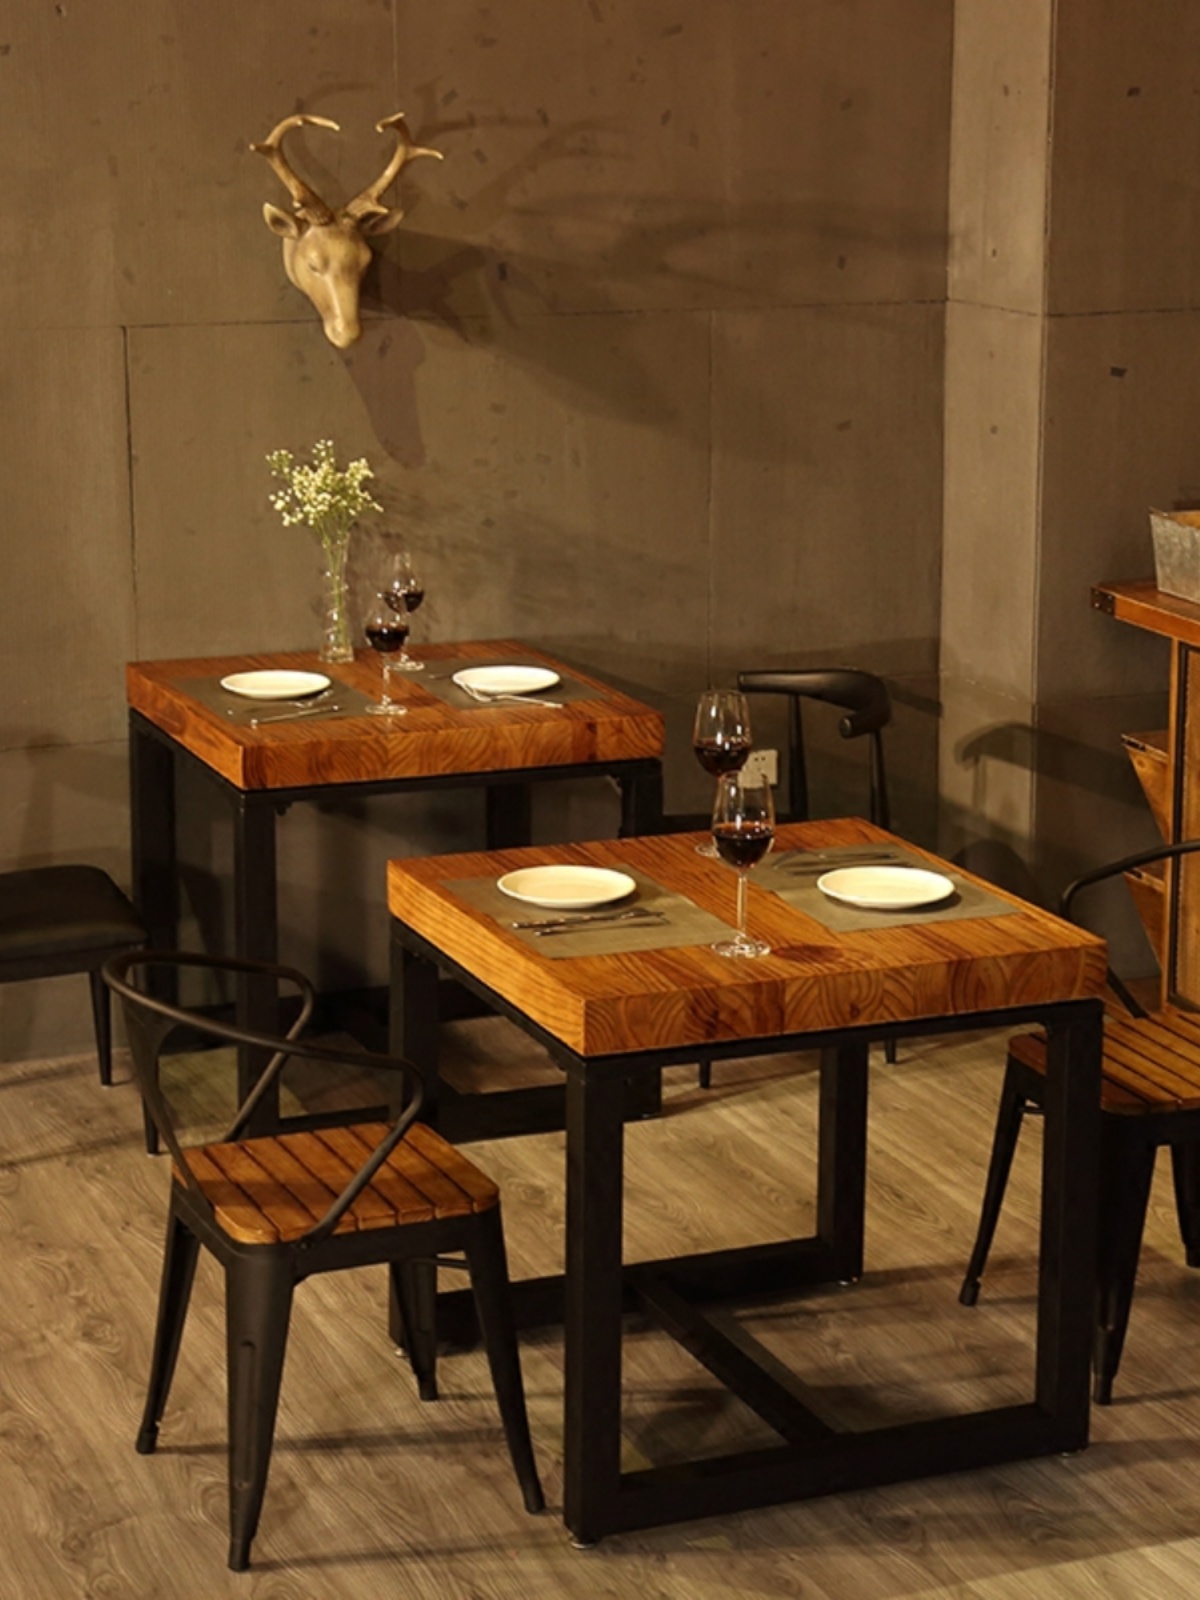 工業風餐廳商用餐桌小吃店餐桌椅組合美式實木餐飲甜品奶茶店桌椅